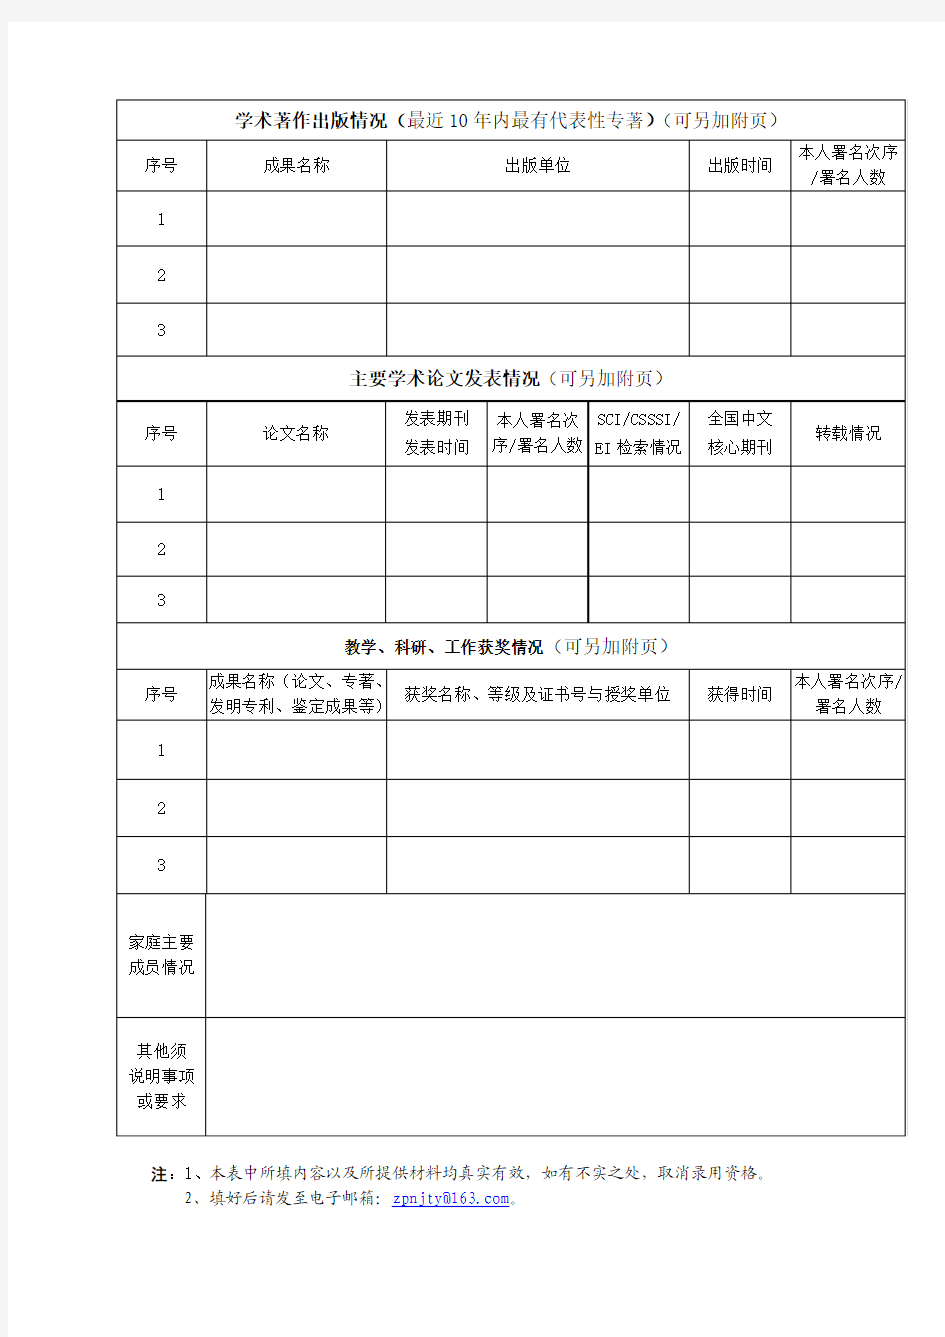 2. 南京特殊教育师范学院公开招聘人员基本信息表